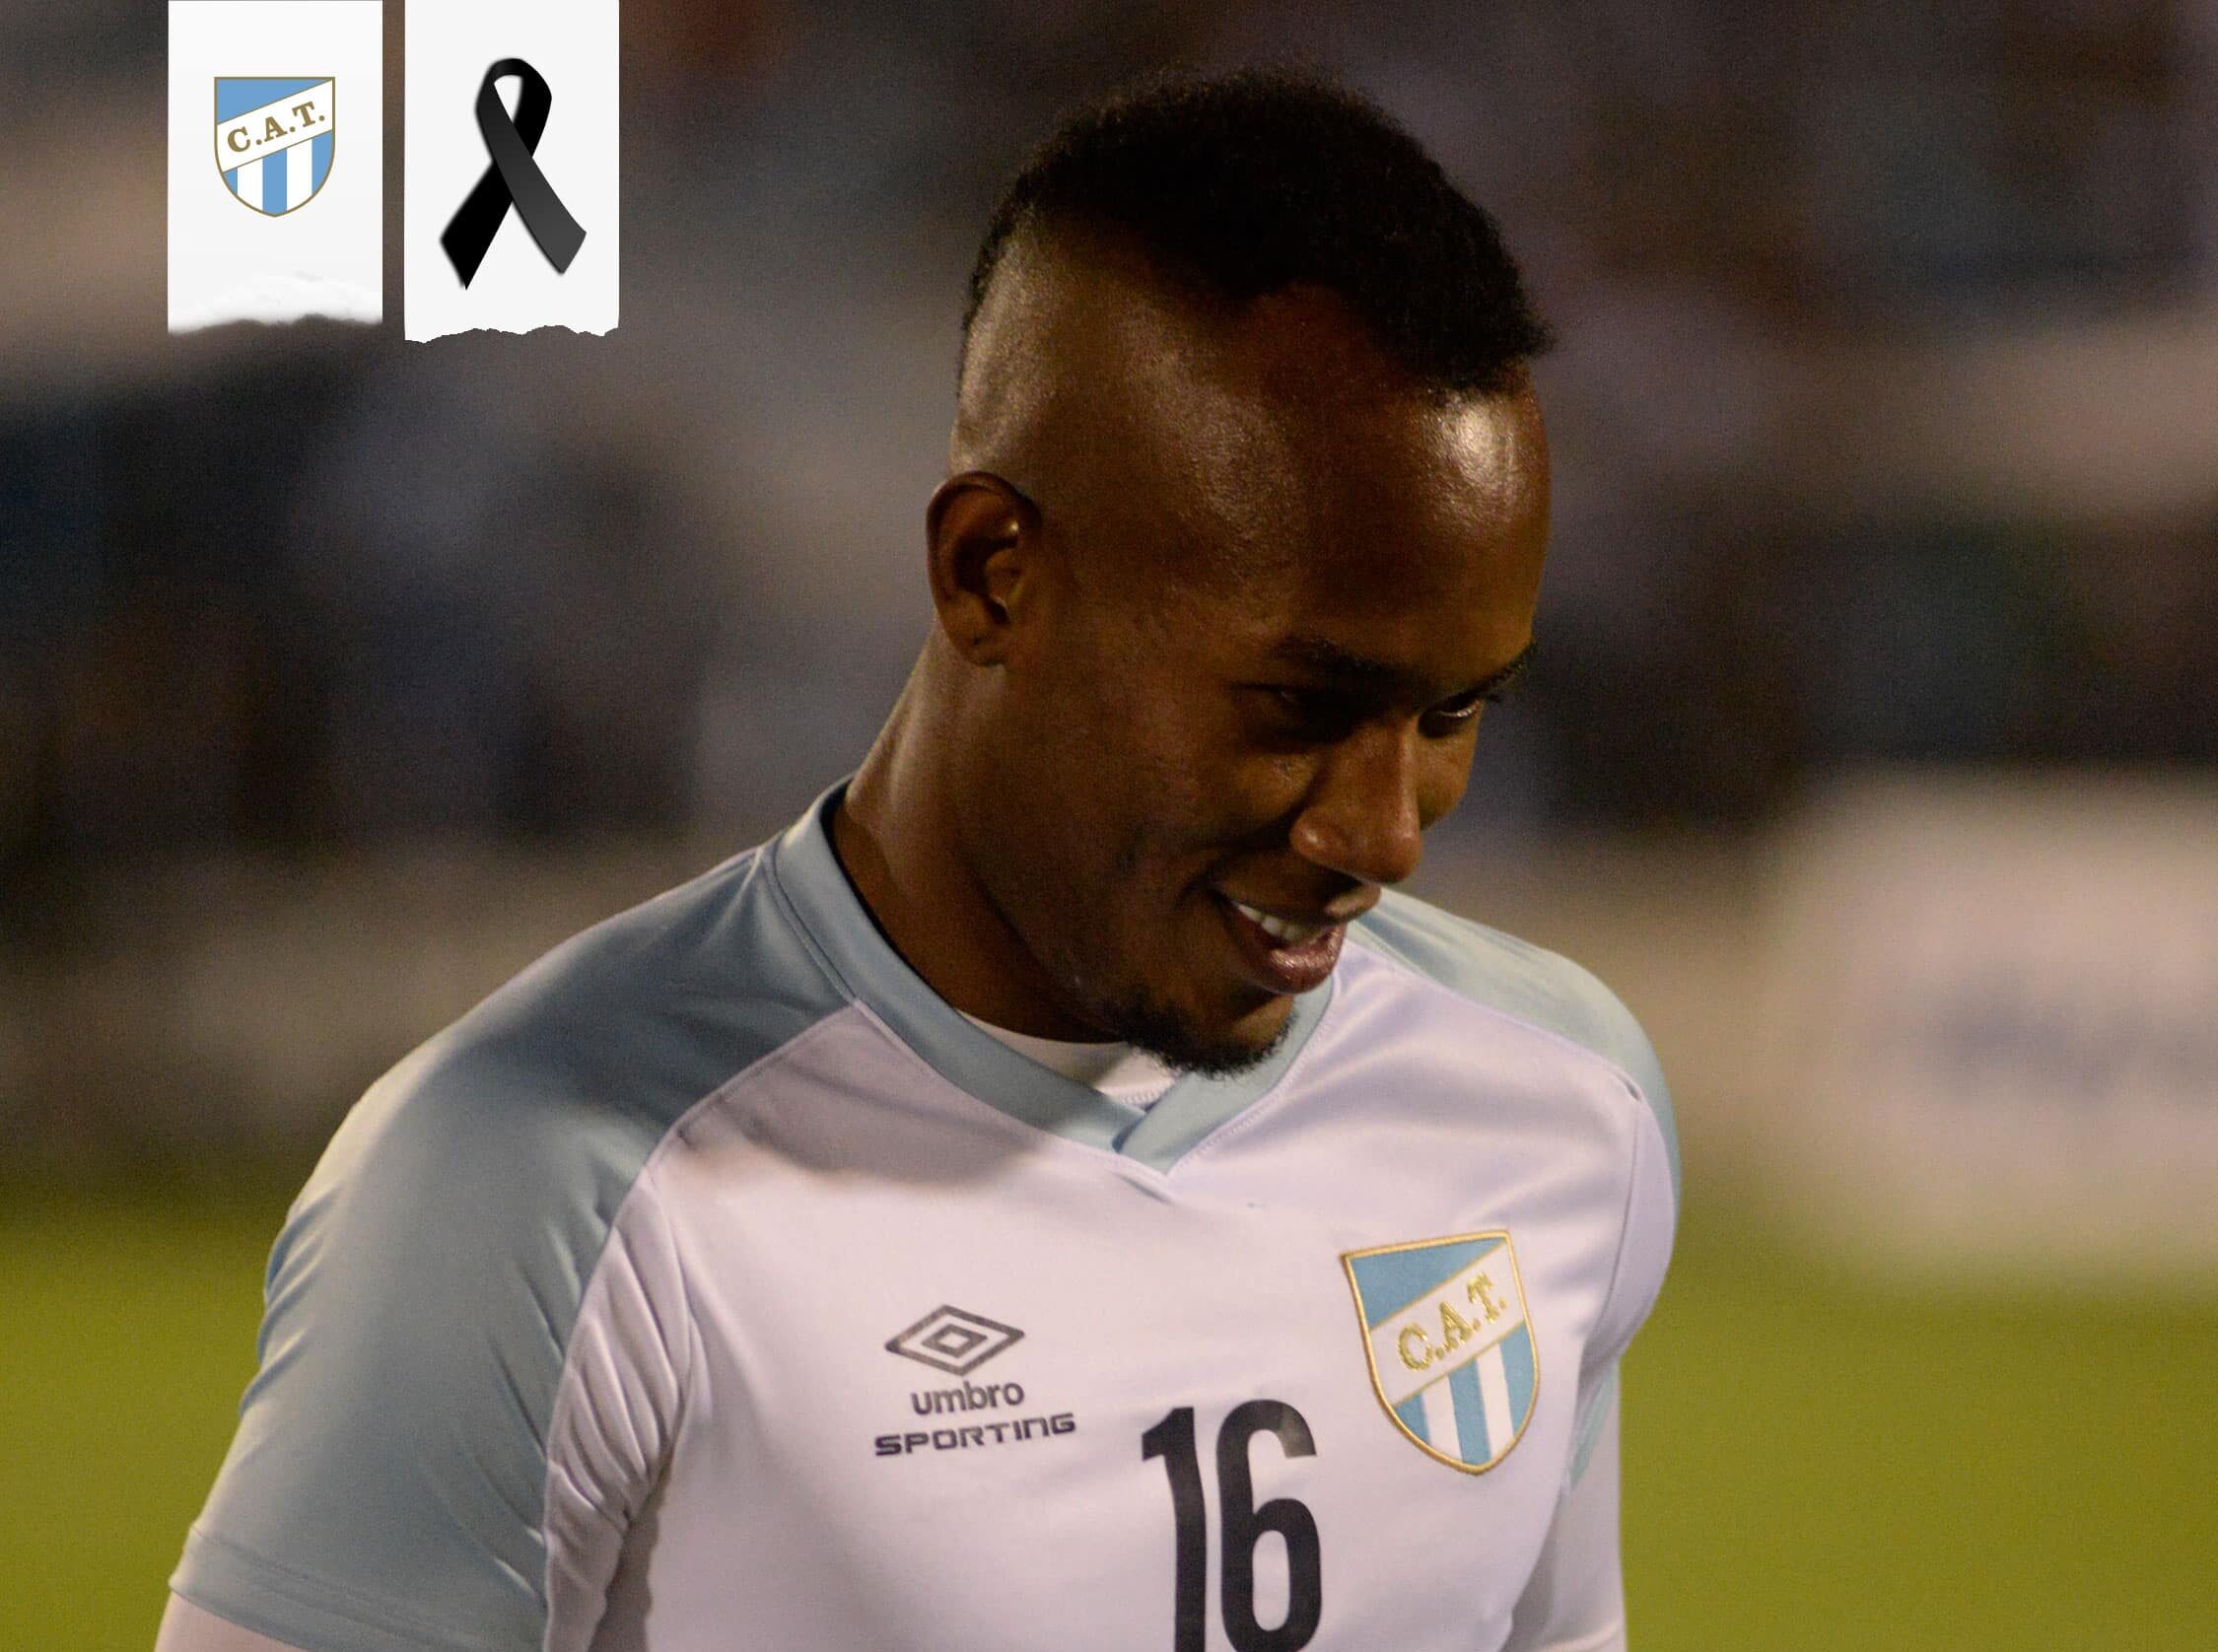 Tragedia in Argentina, il calciatore Andres Balanta muore durante un allenamento: aveva 22 anni